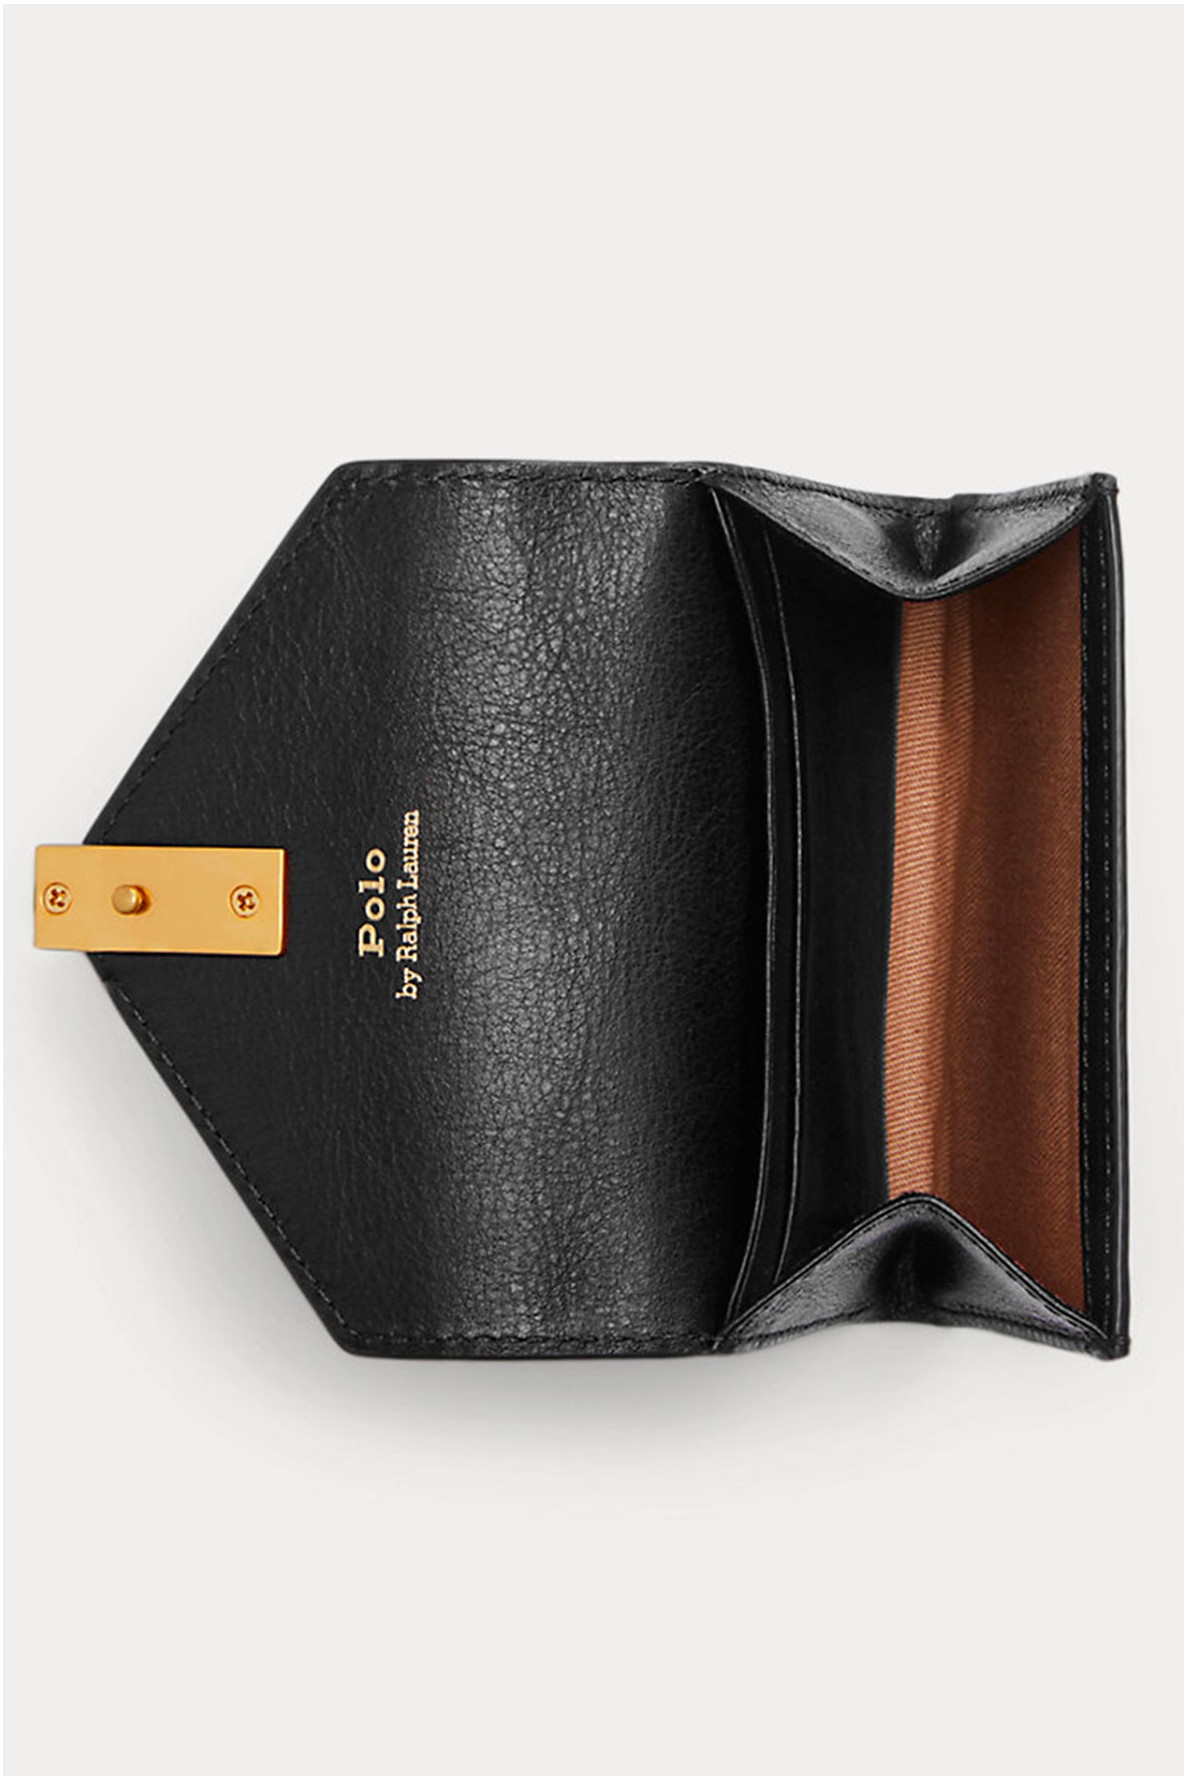 Polo black wallet - Polo - Ralph Lauren - 3 